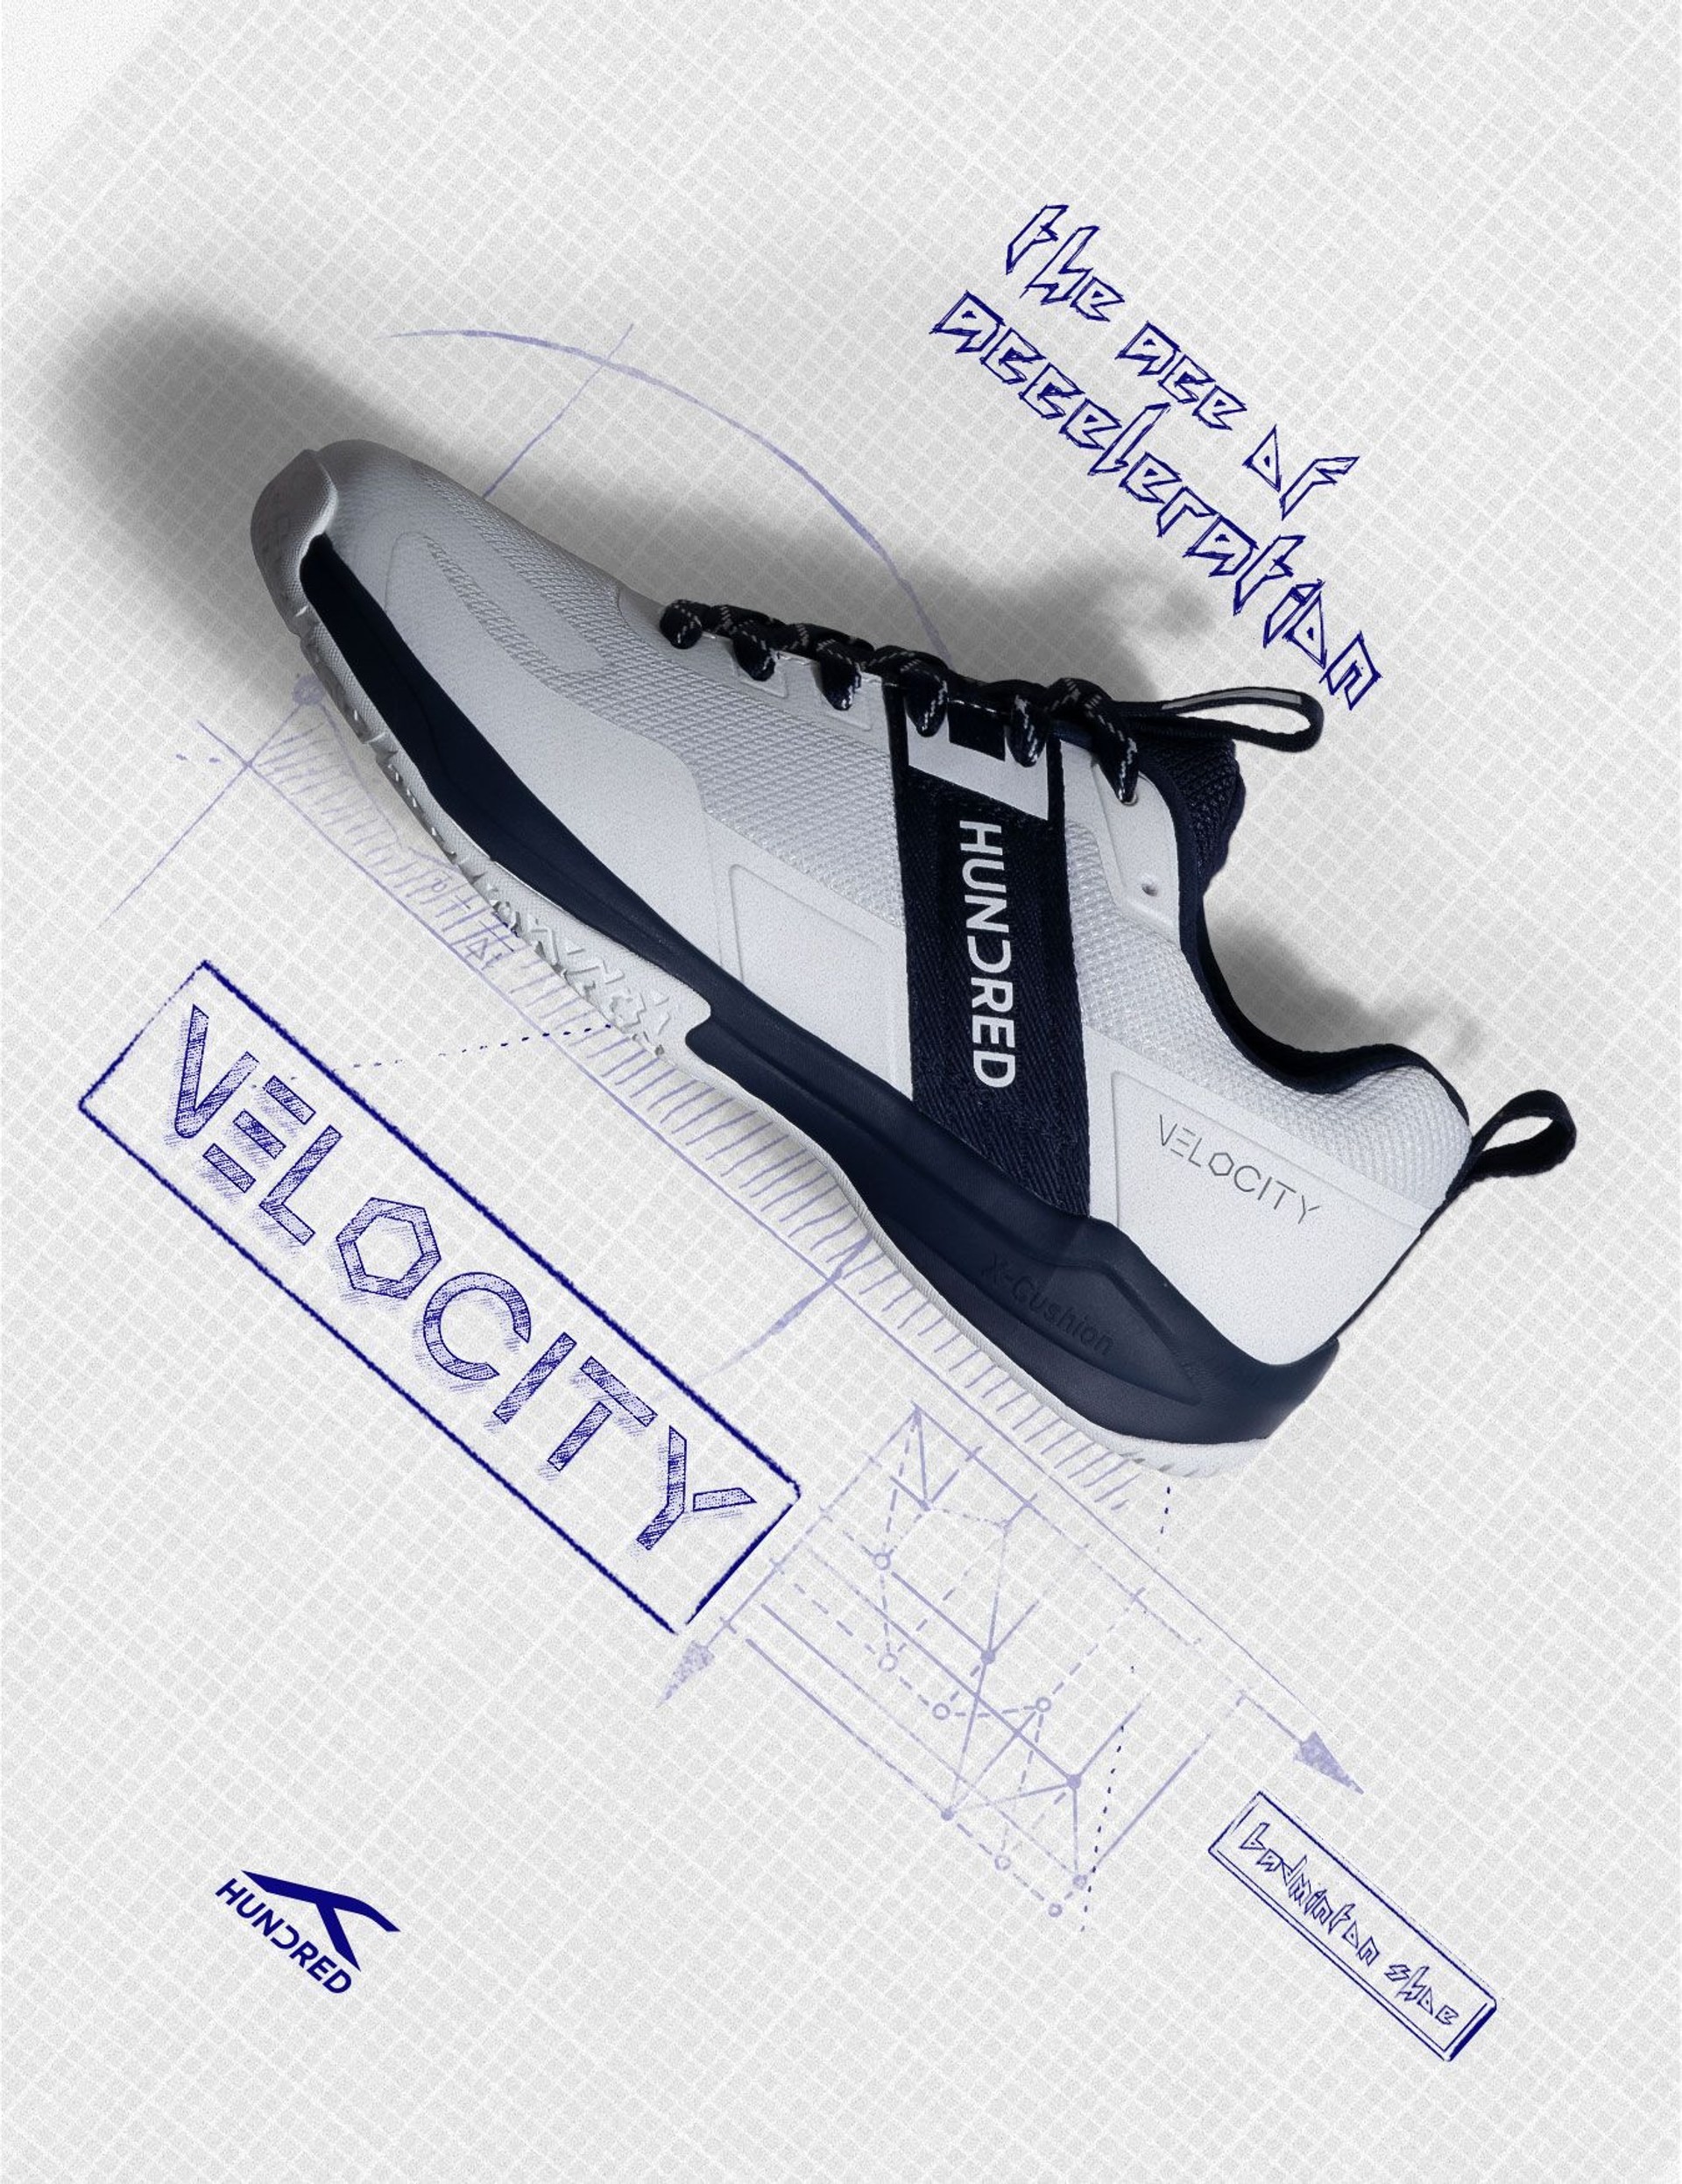 Velocity - Badminton Shoe